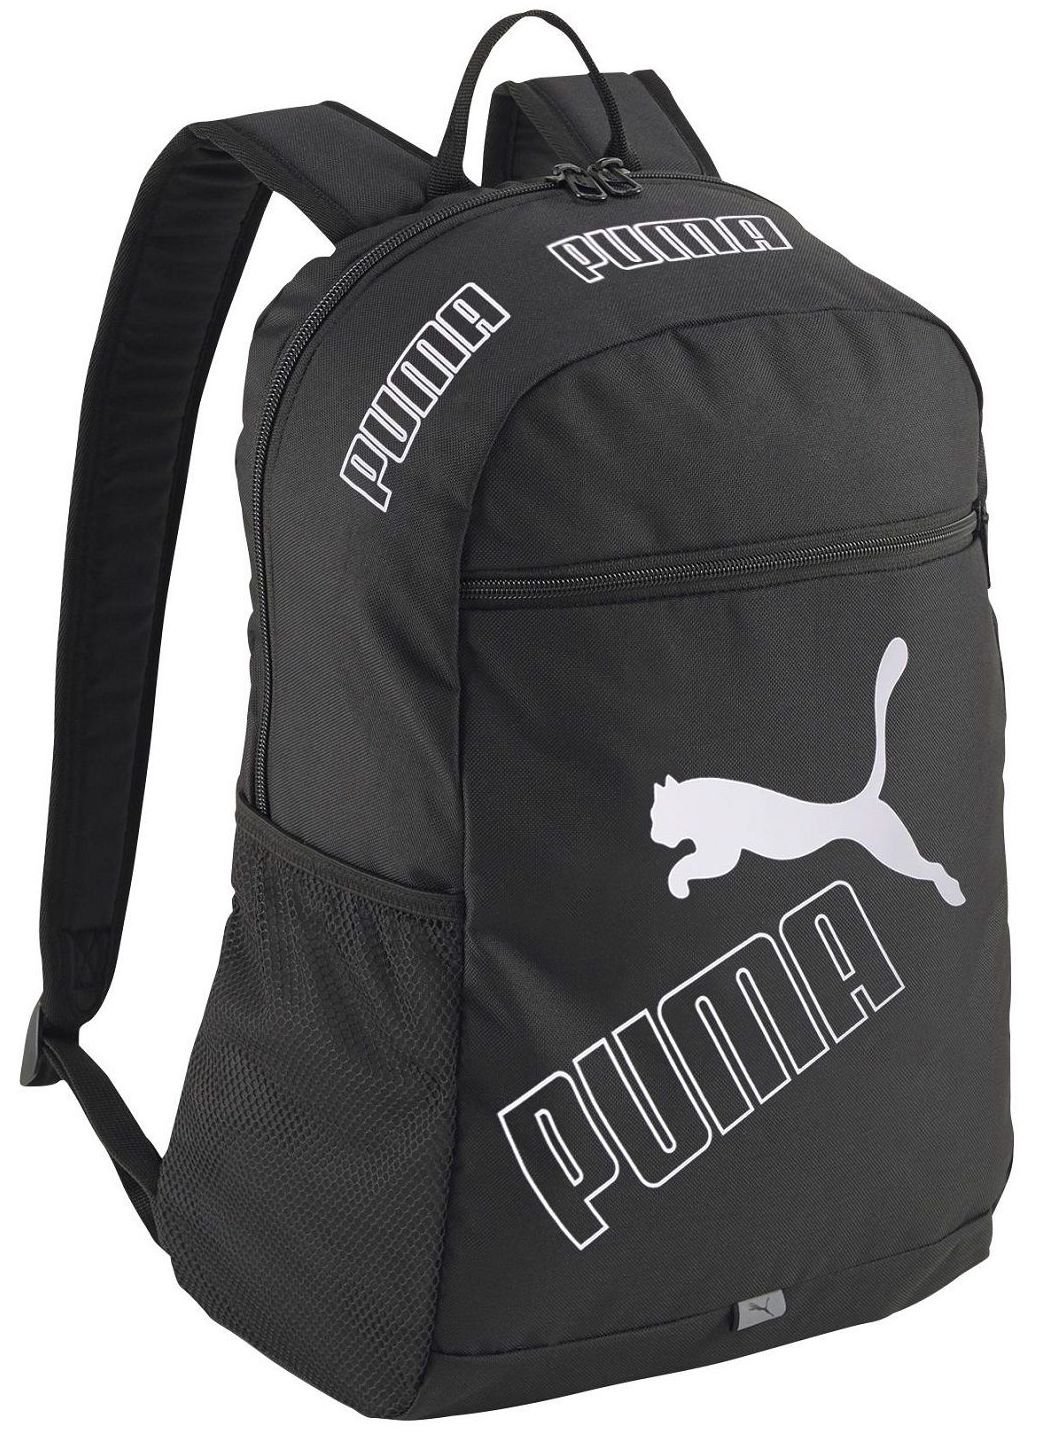 Puma phase backpack